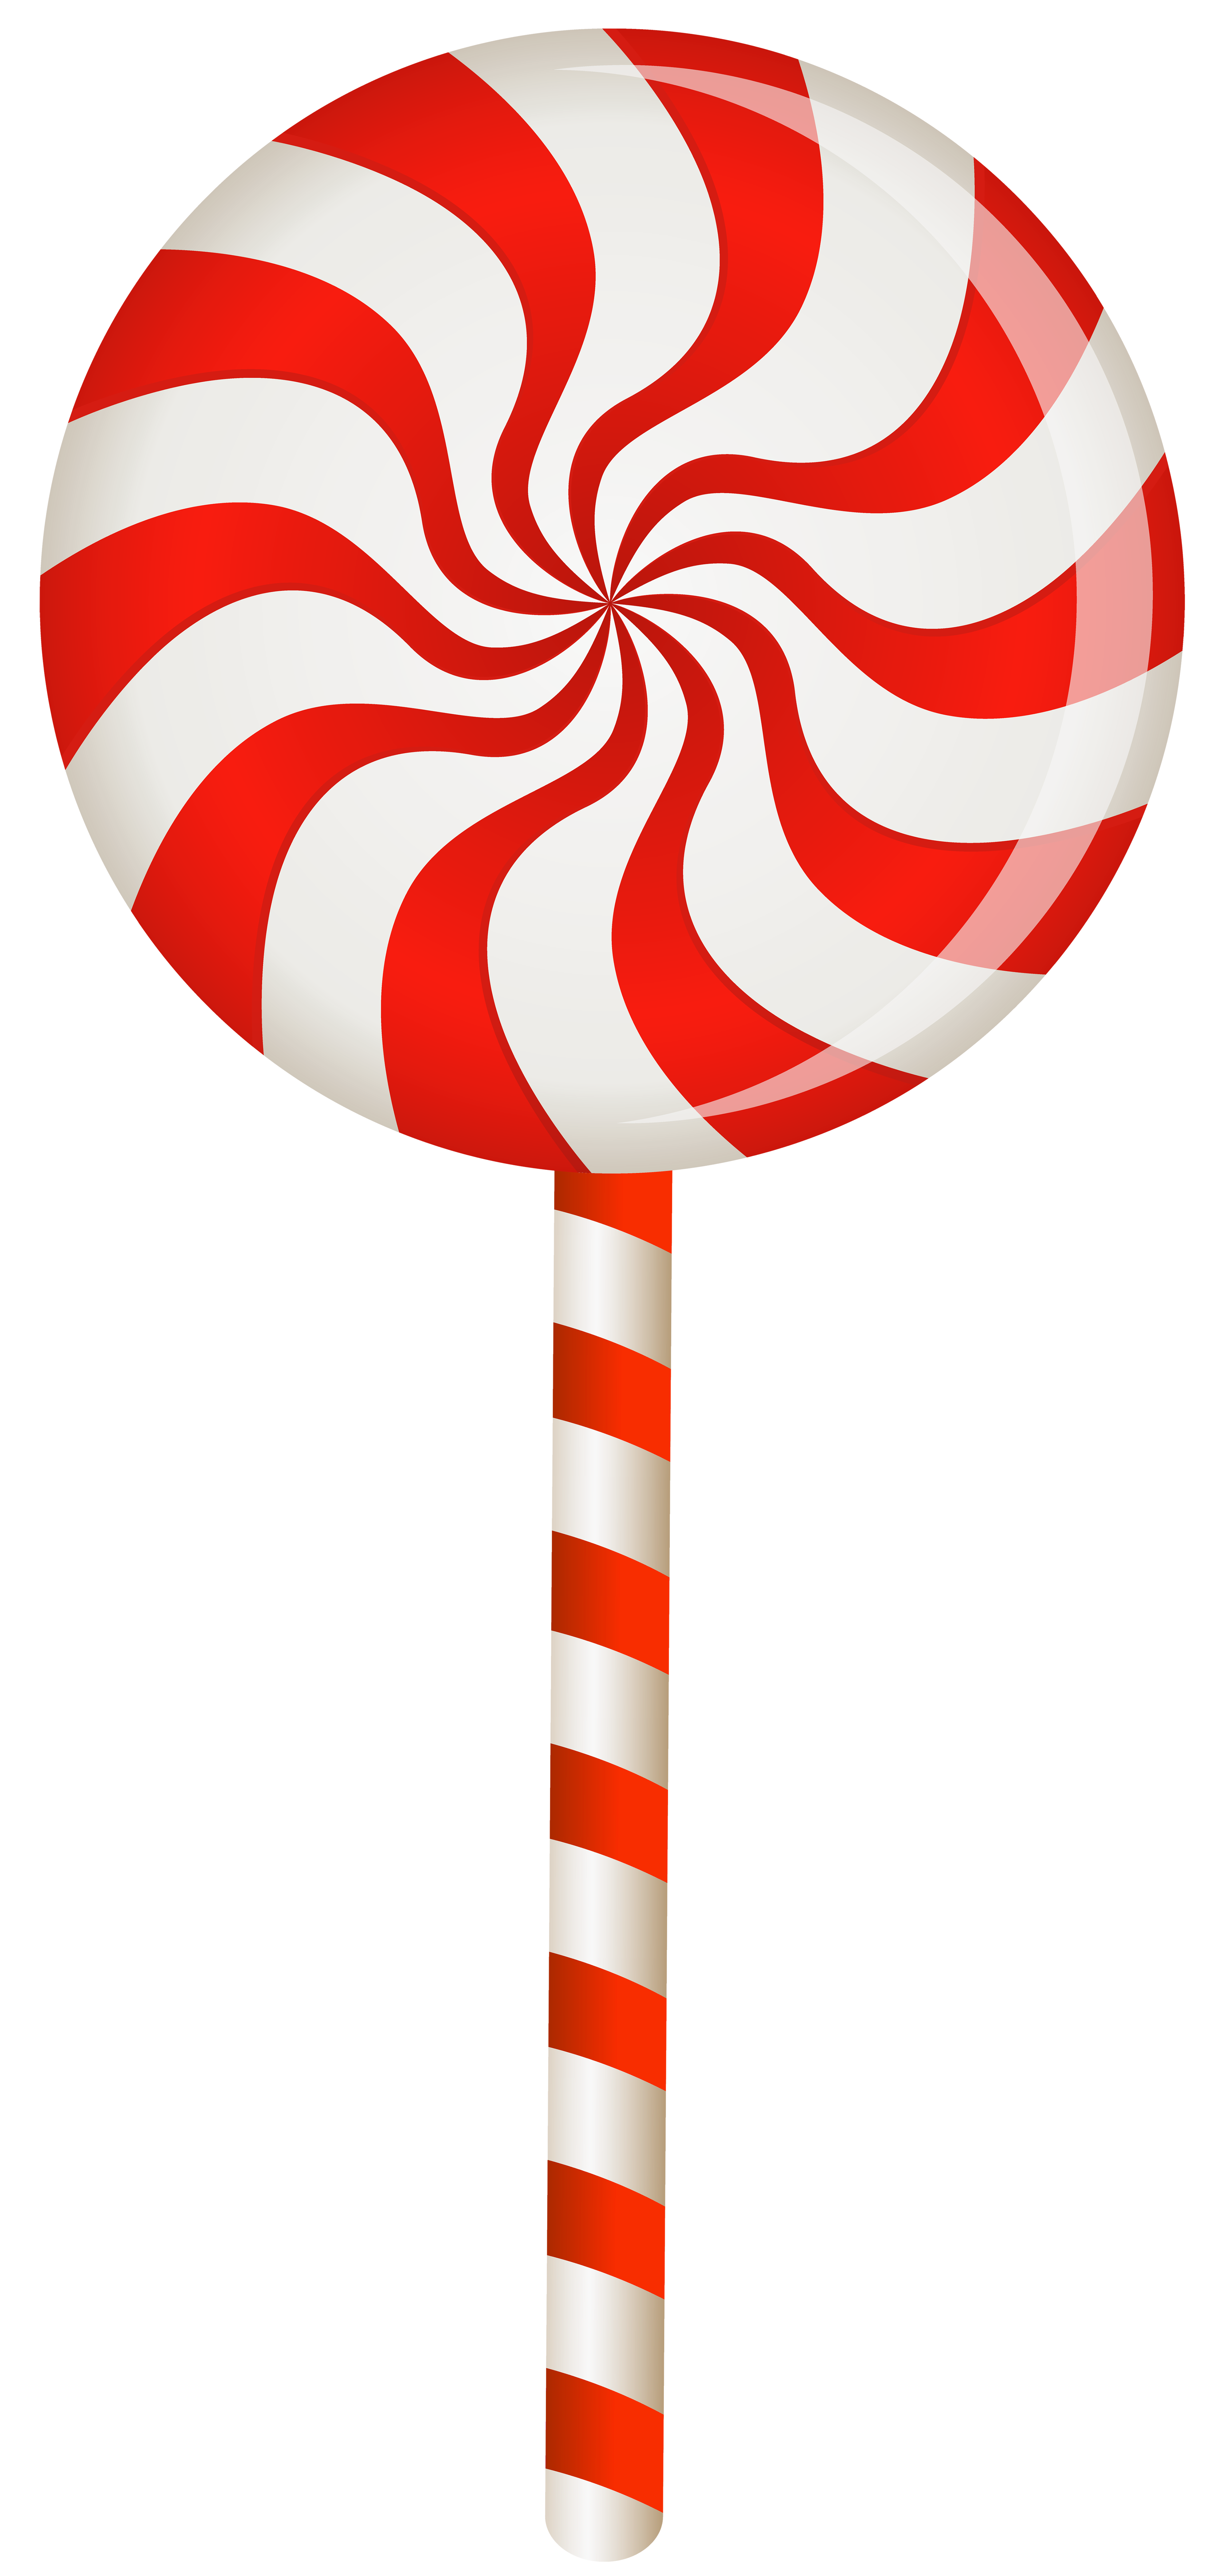 Red swirl lollipop.